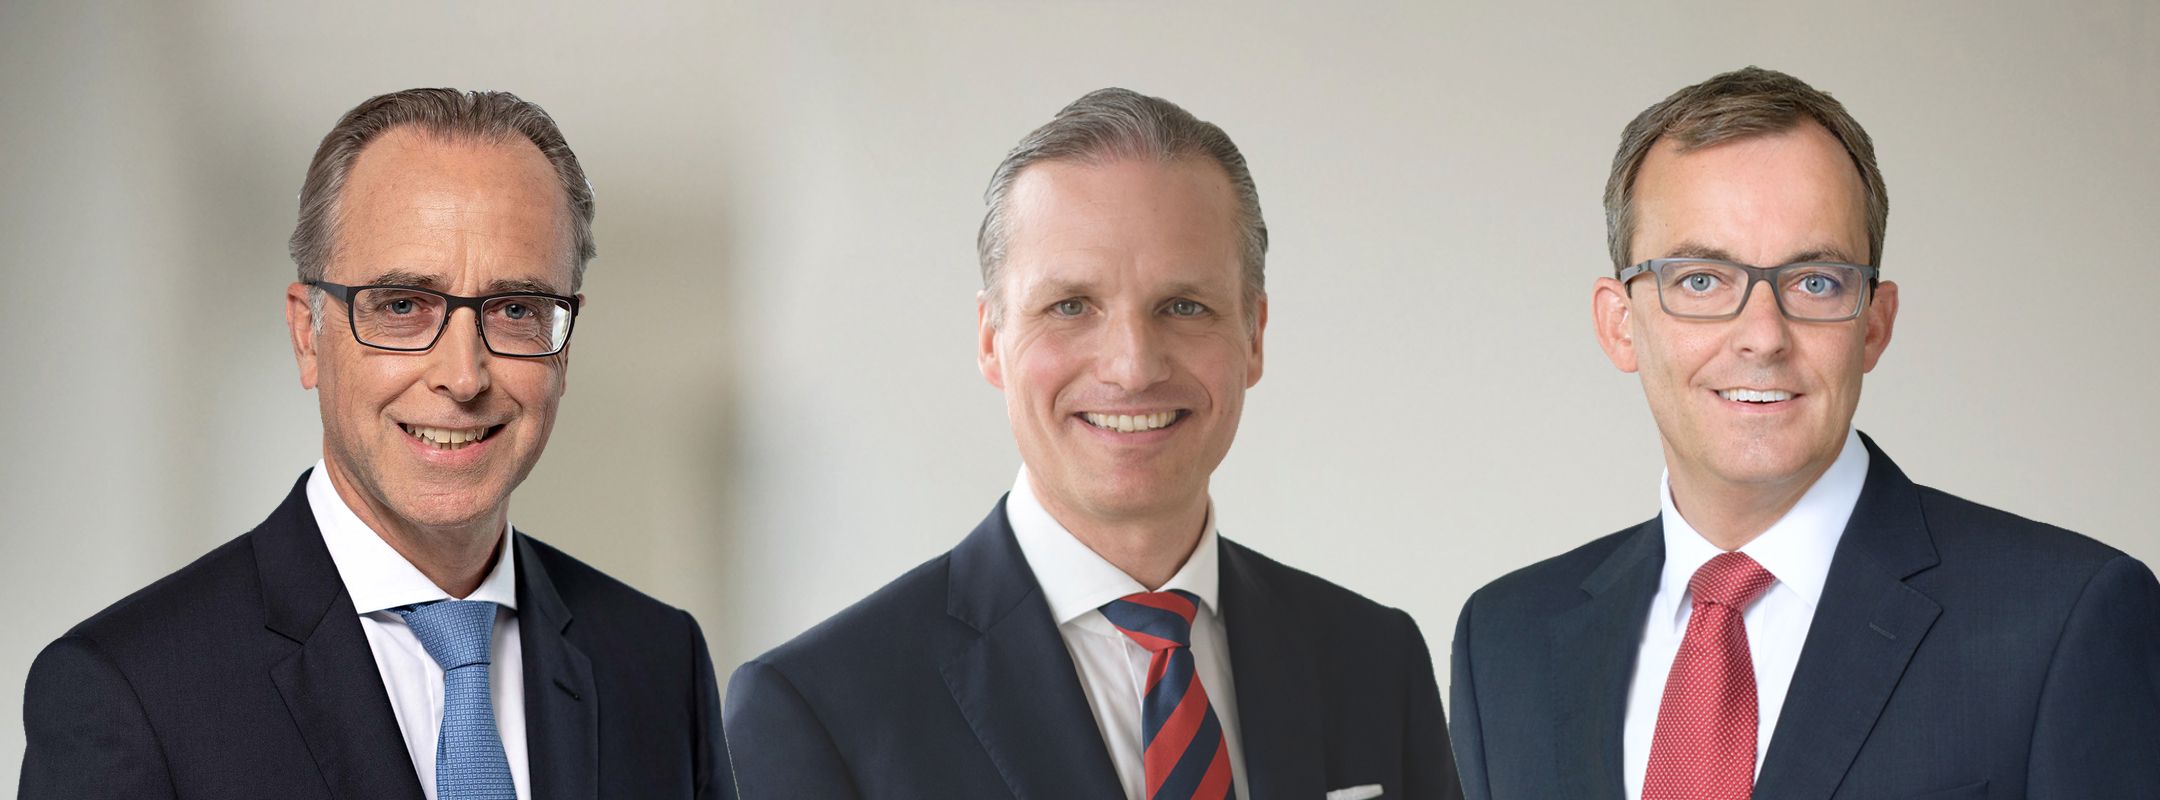 Die Initiatoren Dr. Jörg Schneider-Brodtmann, Dr. Andreas von Criegern und Dr. Joachim Gores im Interview